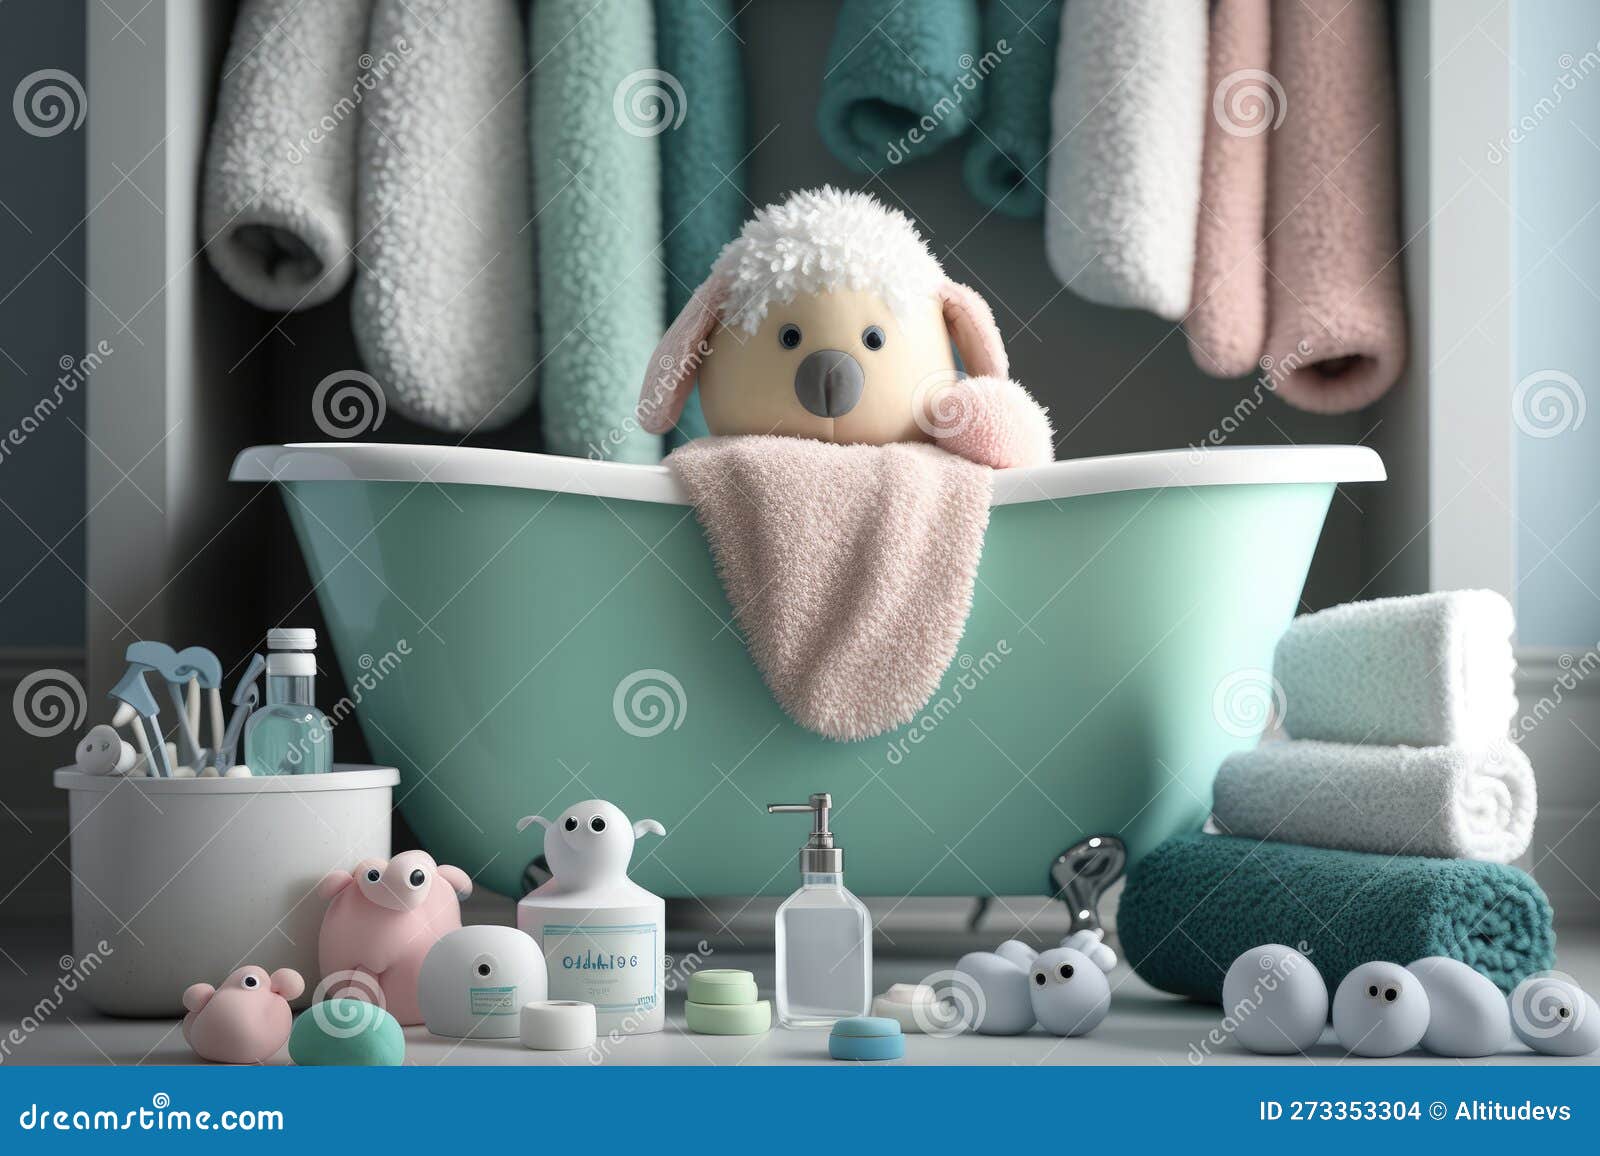 Artículos de baño para bebé, juguetes, toallas y más